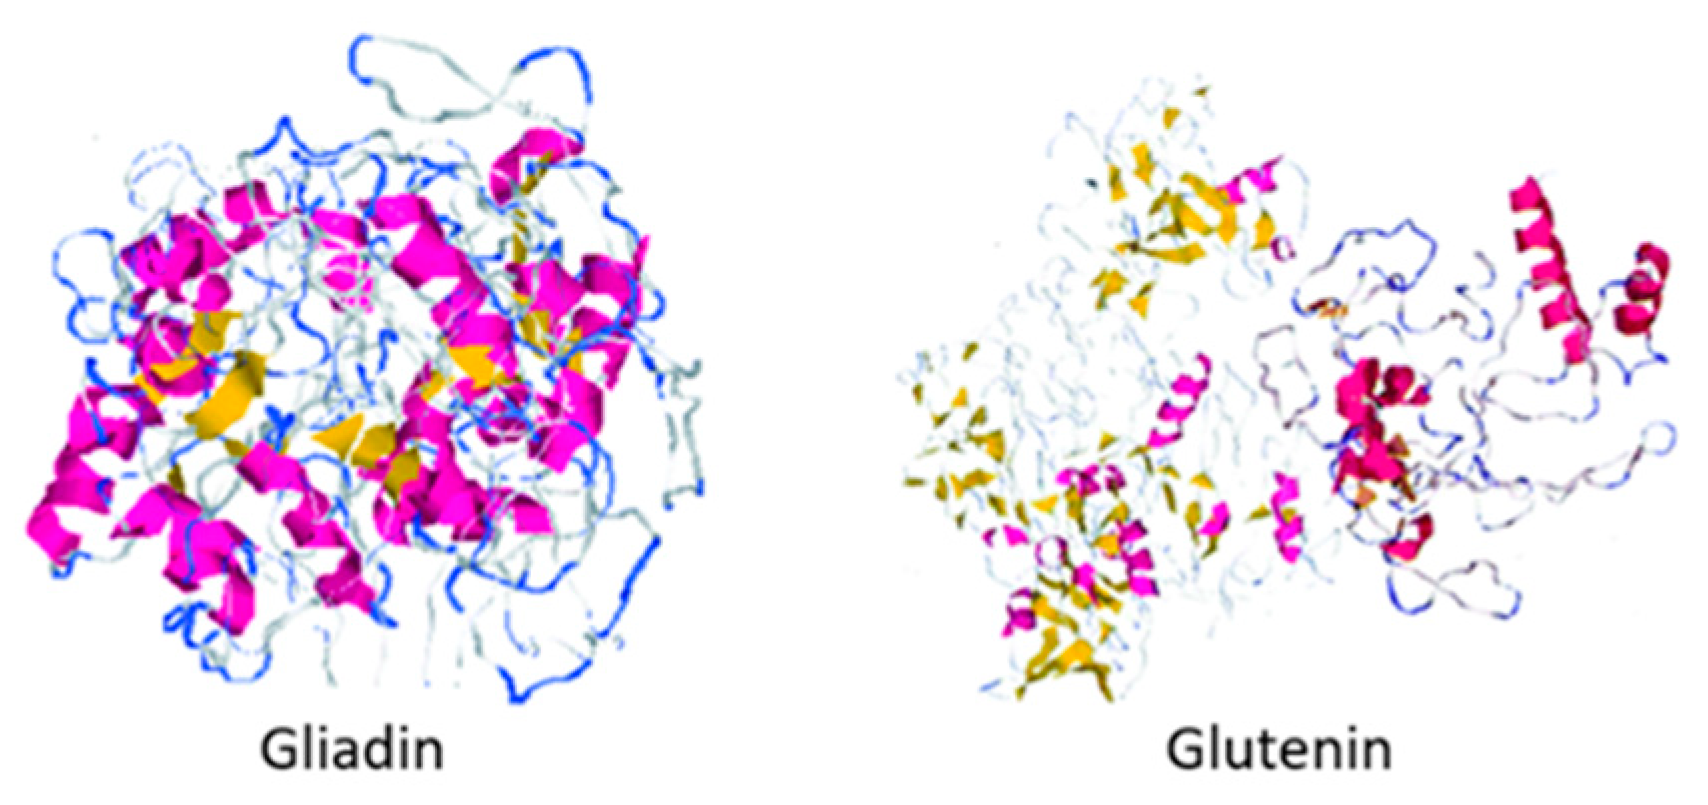 gliadin structure